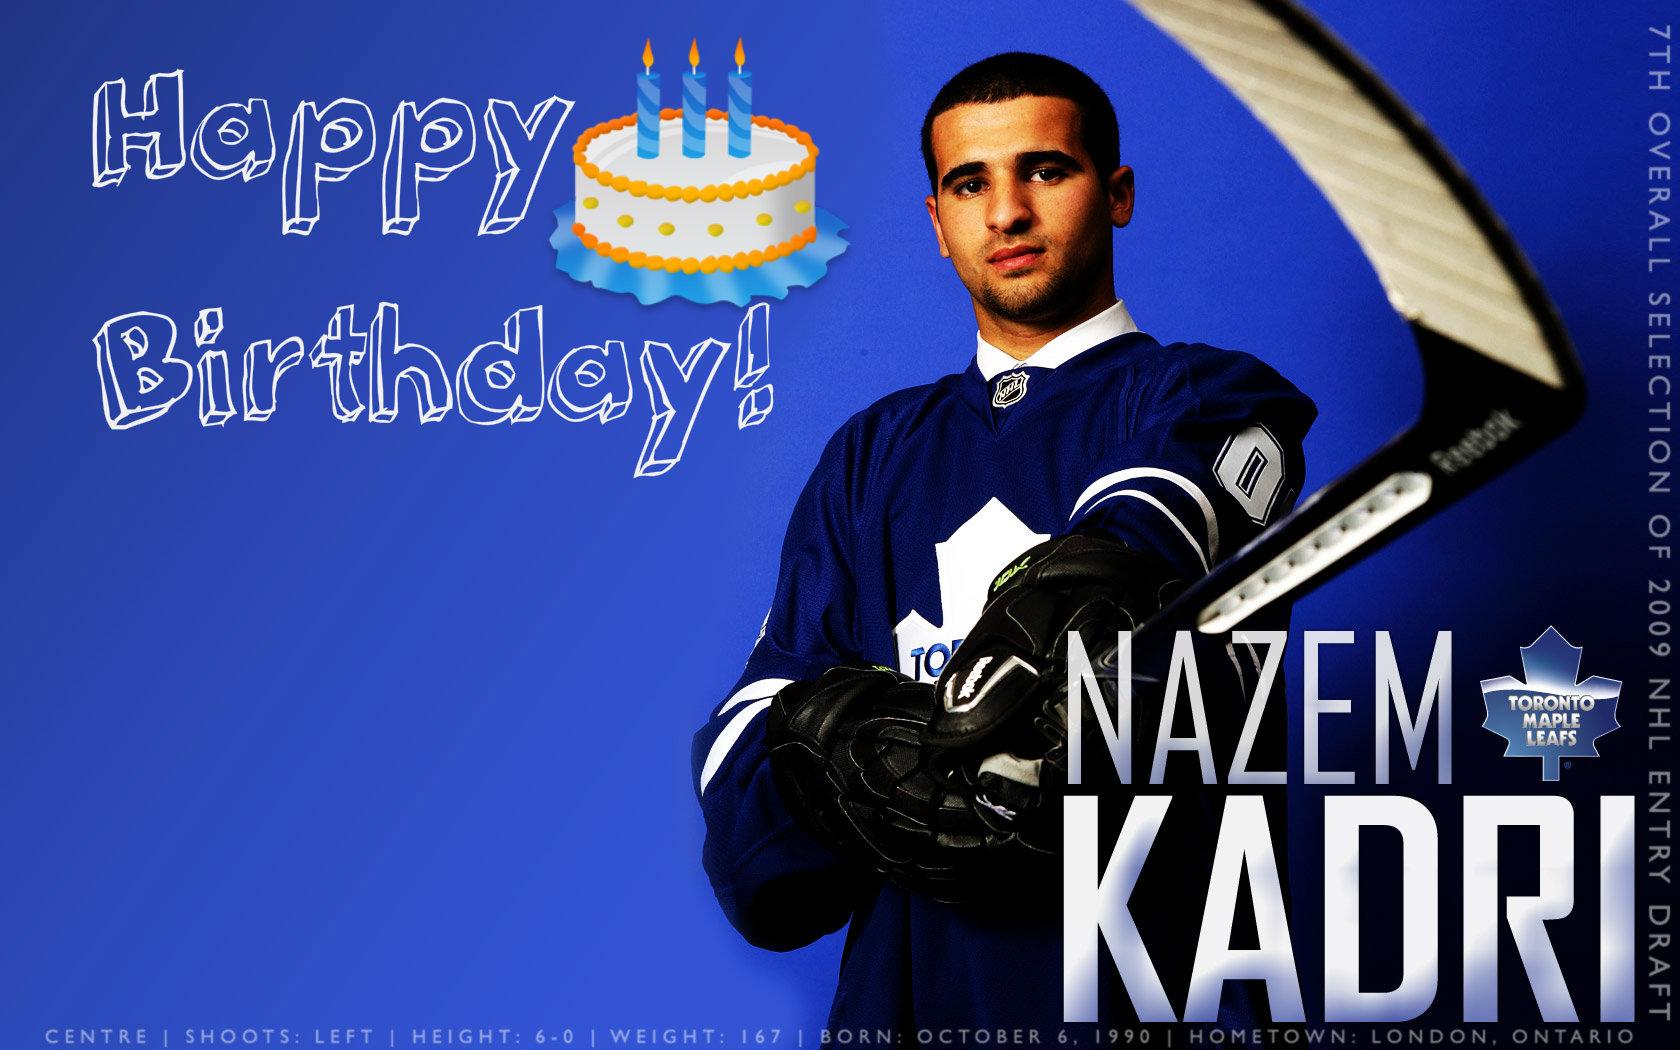 Let\s all take a moment to wish Nazem Kadri a happy birthday today! From Maple Leafs Fanatics, Happy Birthday Nazem! 